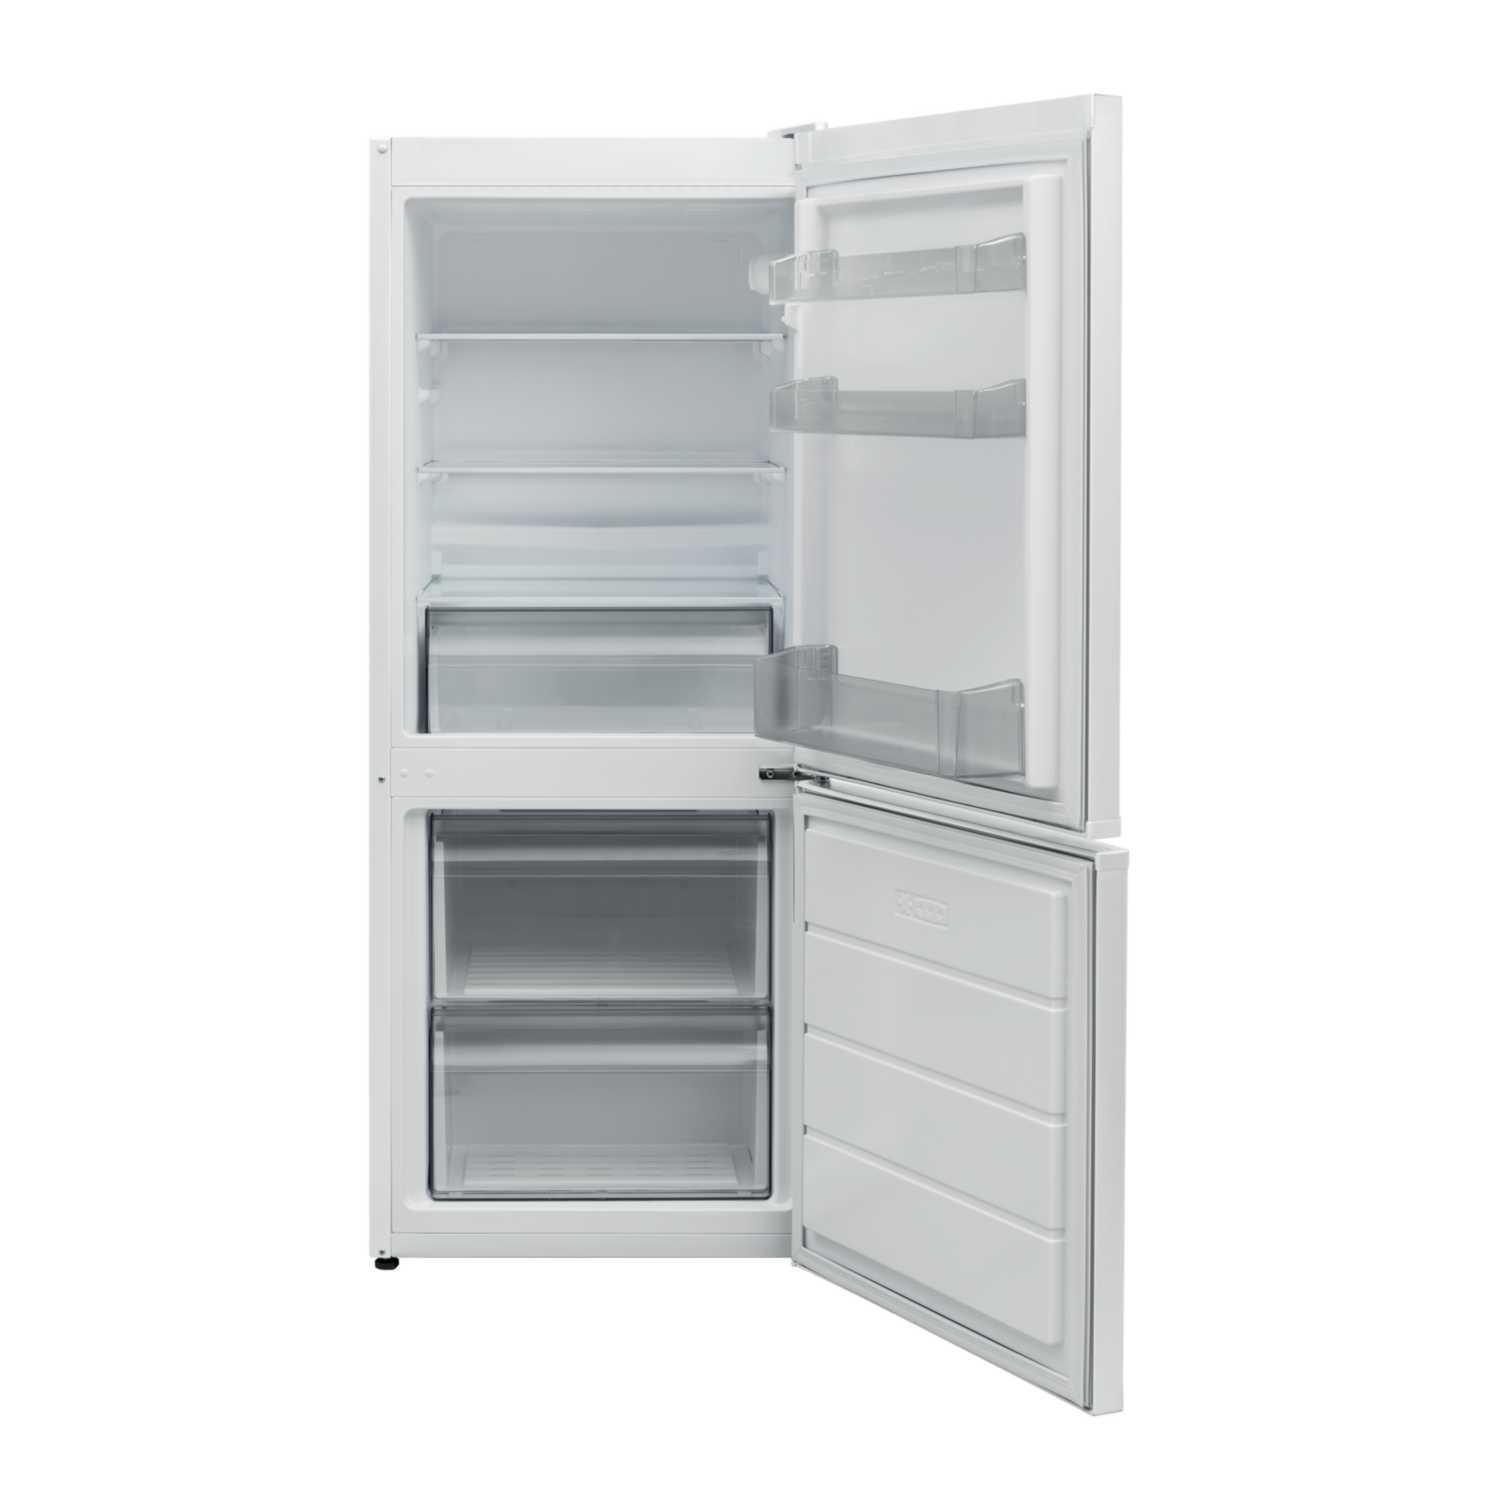 Statesman LF1355W Fridge Freezer Low Frost (H)136 x (W)54 x (D)59.5 cm White 2 Year Warranty White